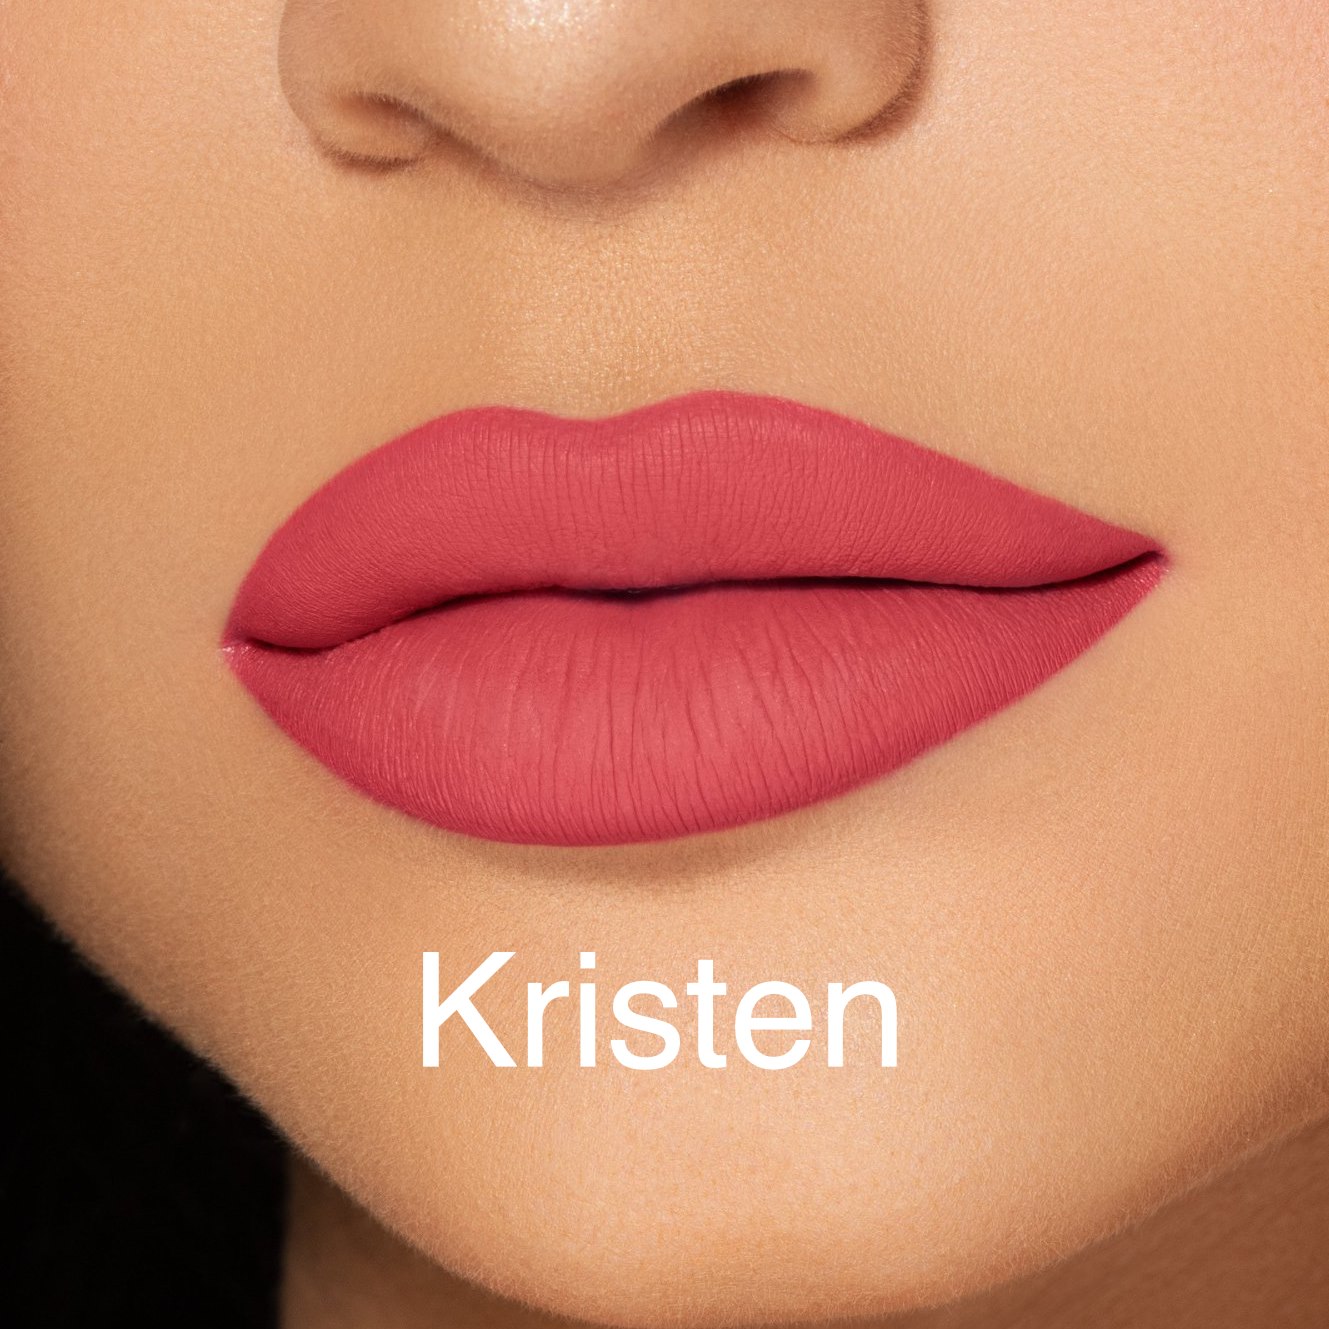 Kylie Cosmetics Kristen Lipstick